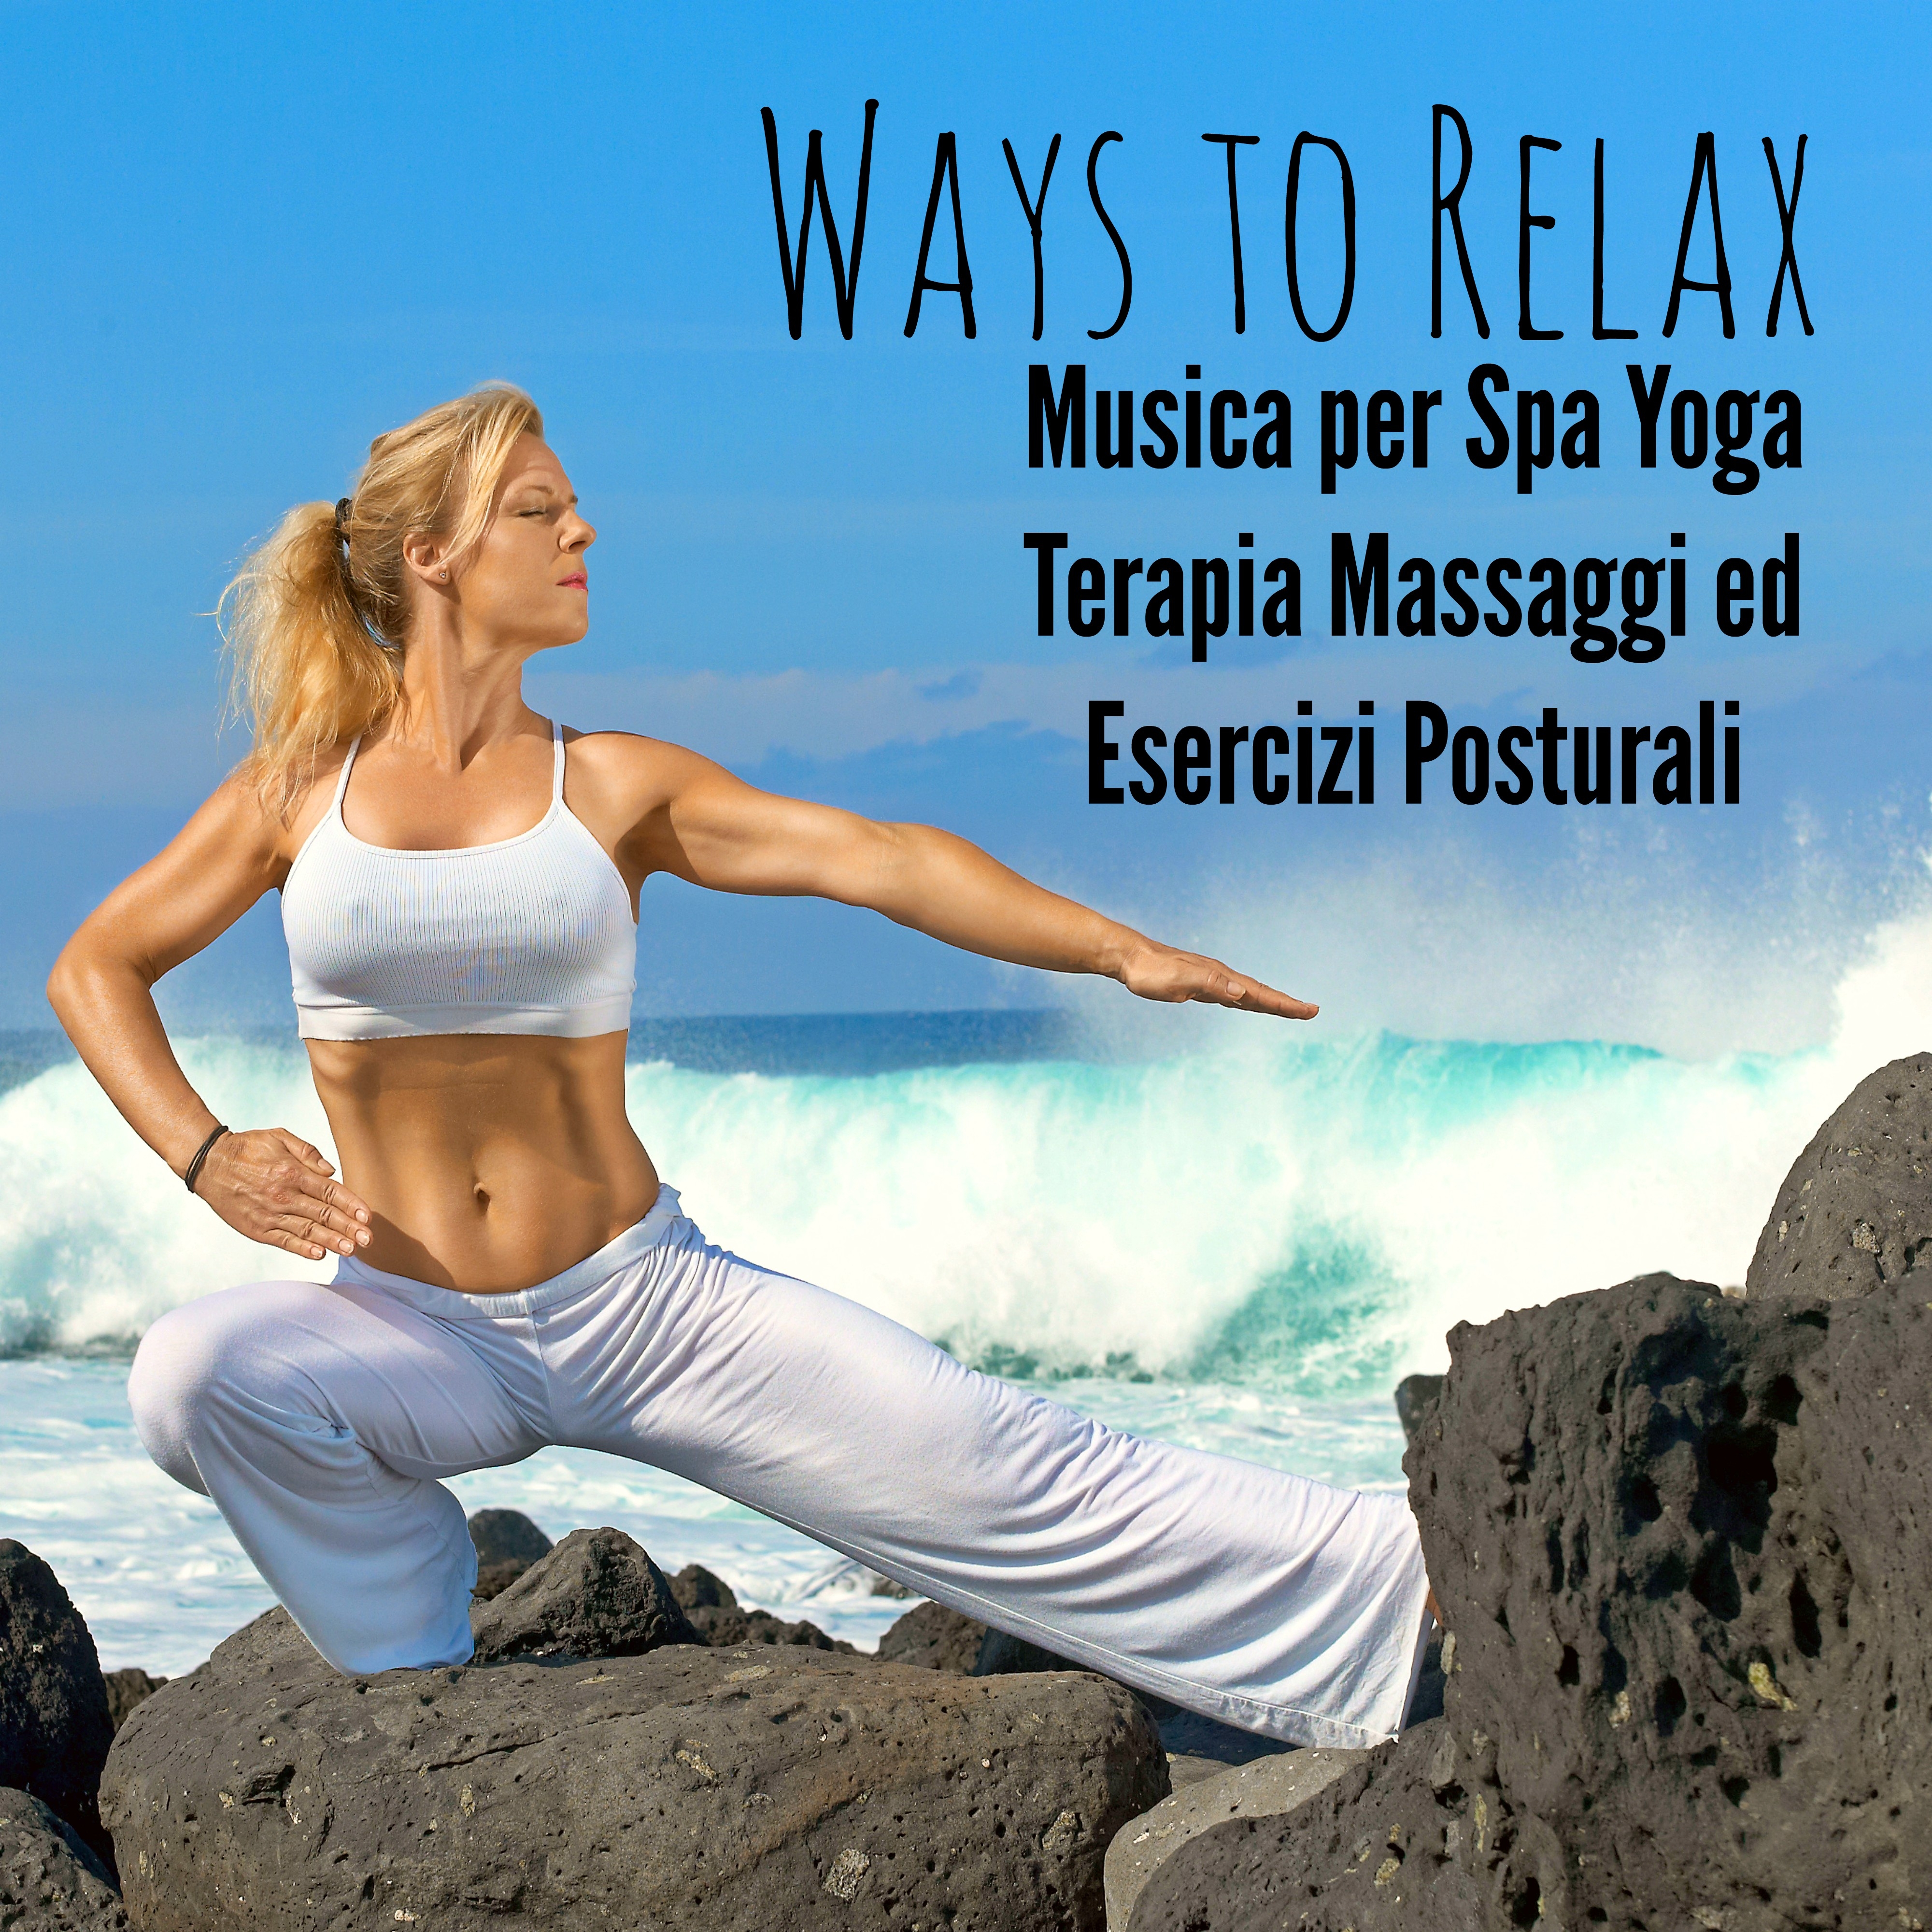 Ways to Relax - Musica per Spa Yoga Terapia Massaggi ed Esercizi Posturali con Suoni Easy Listening Chill Strumentali Techno House